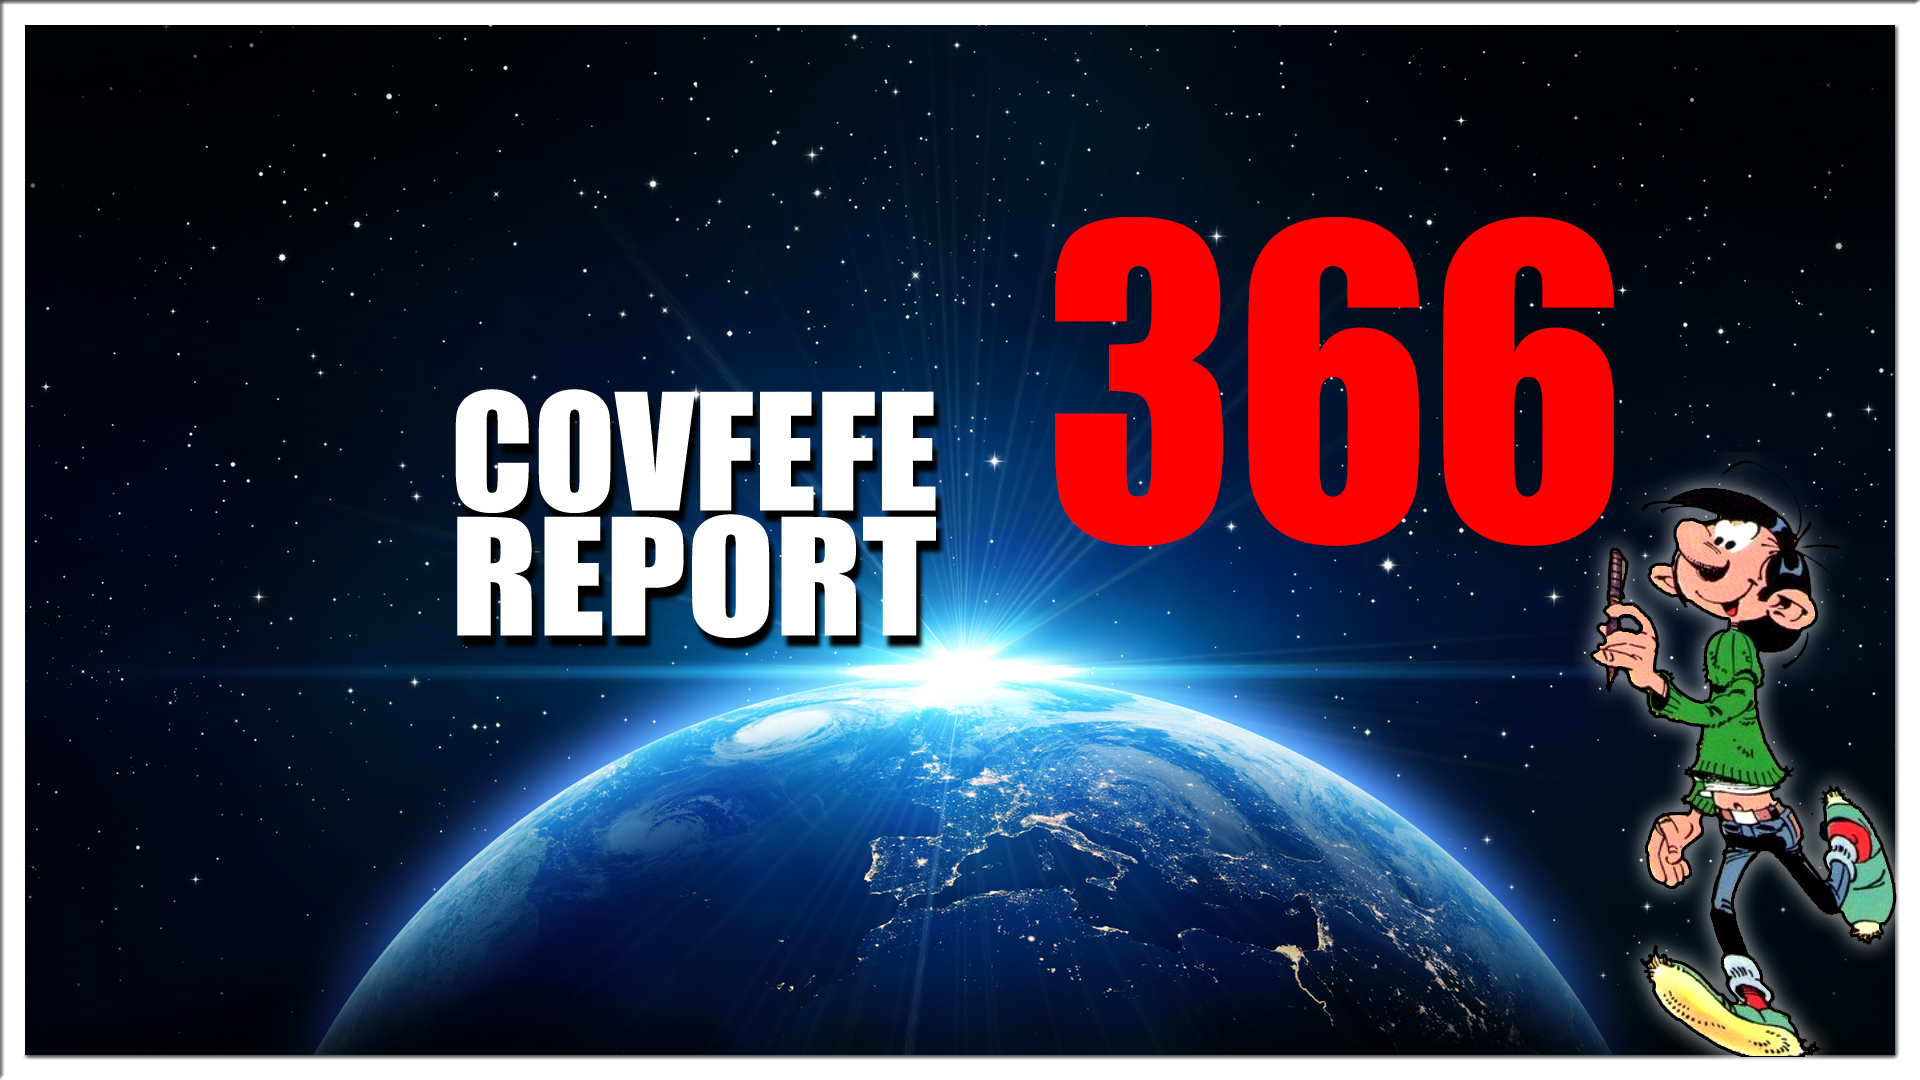 Covfefe Report 366. Civil war, Impeachment 2, Waar blijven jullie?